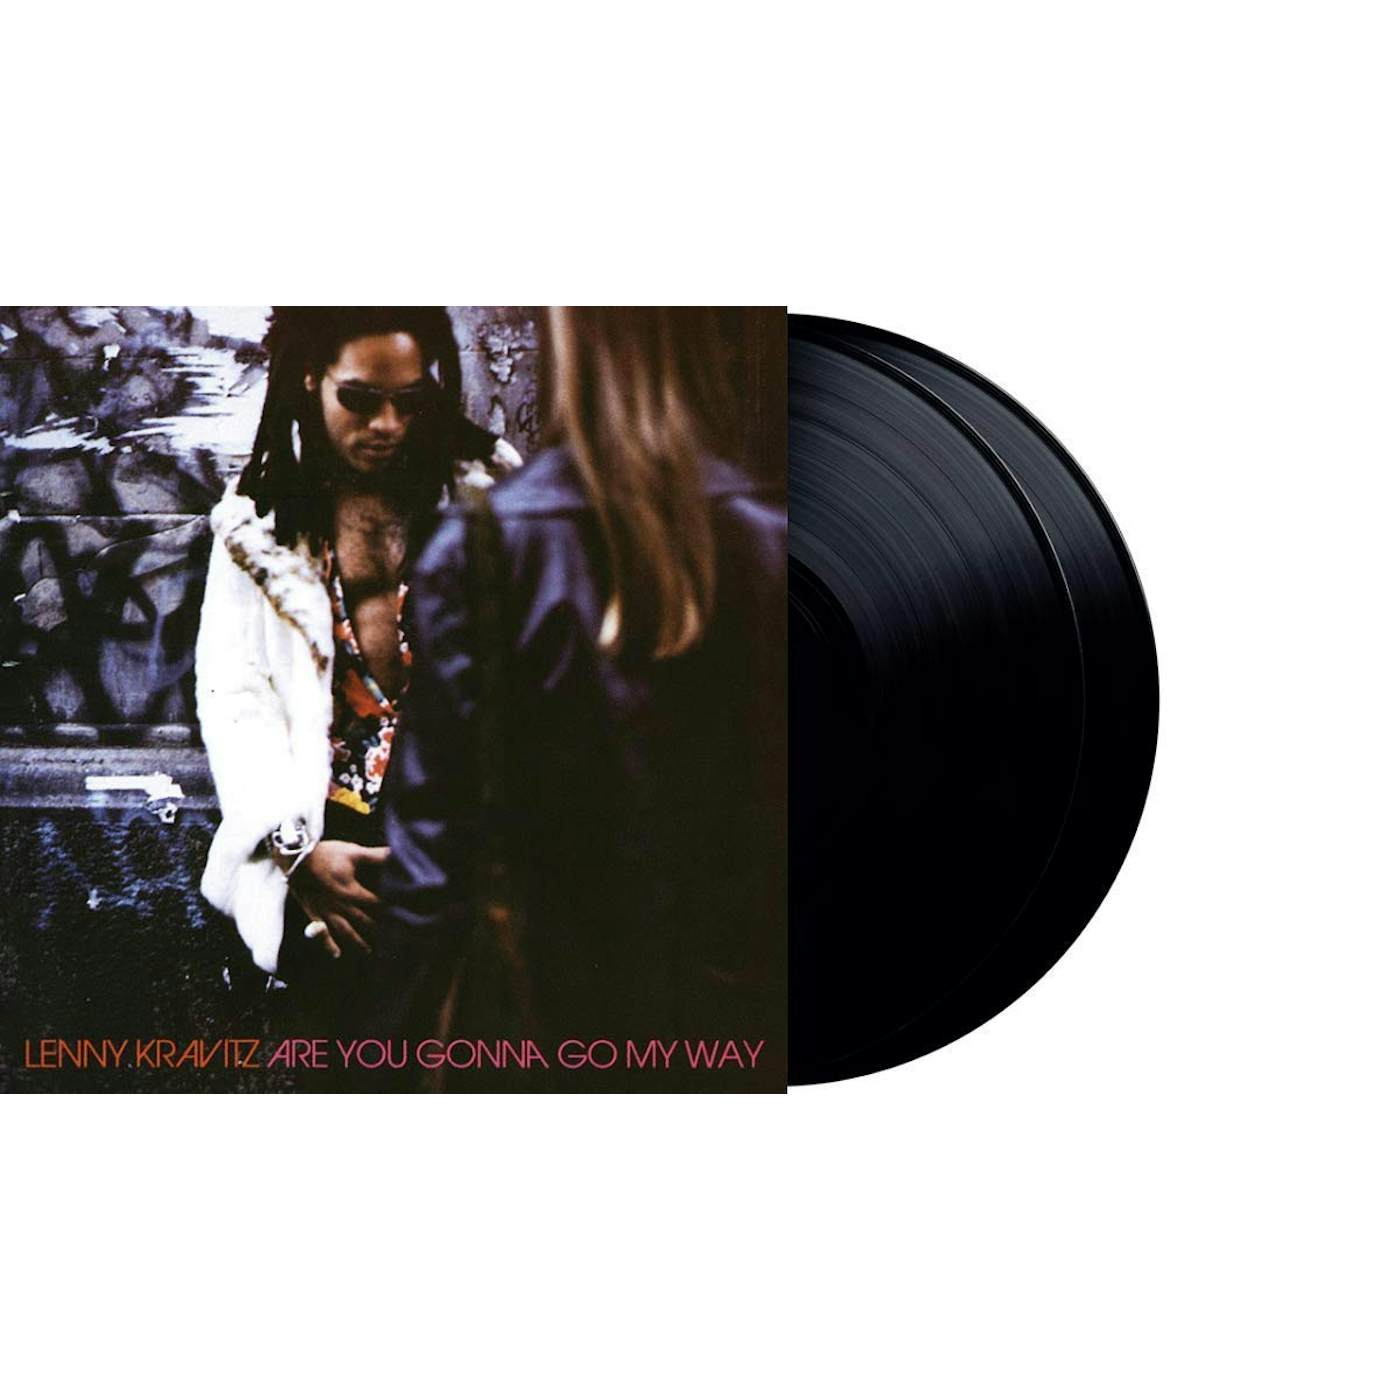 Lenny Kravitz Are You Gonna Go My Way Vinyl Record